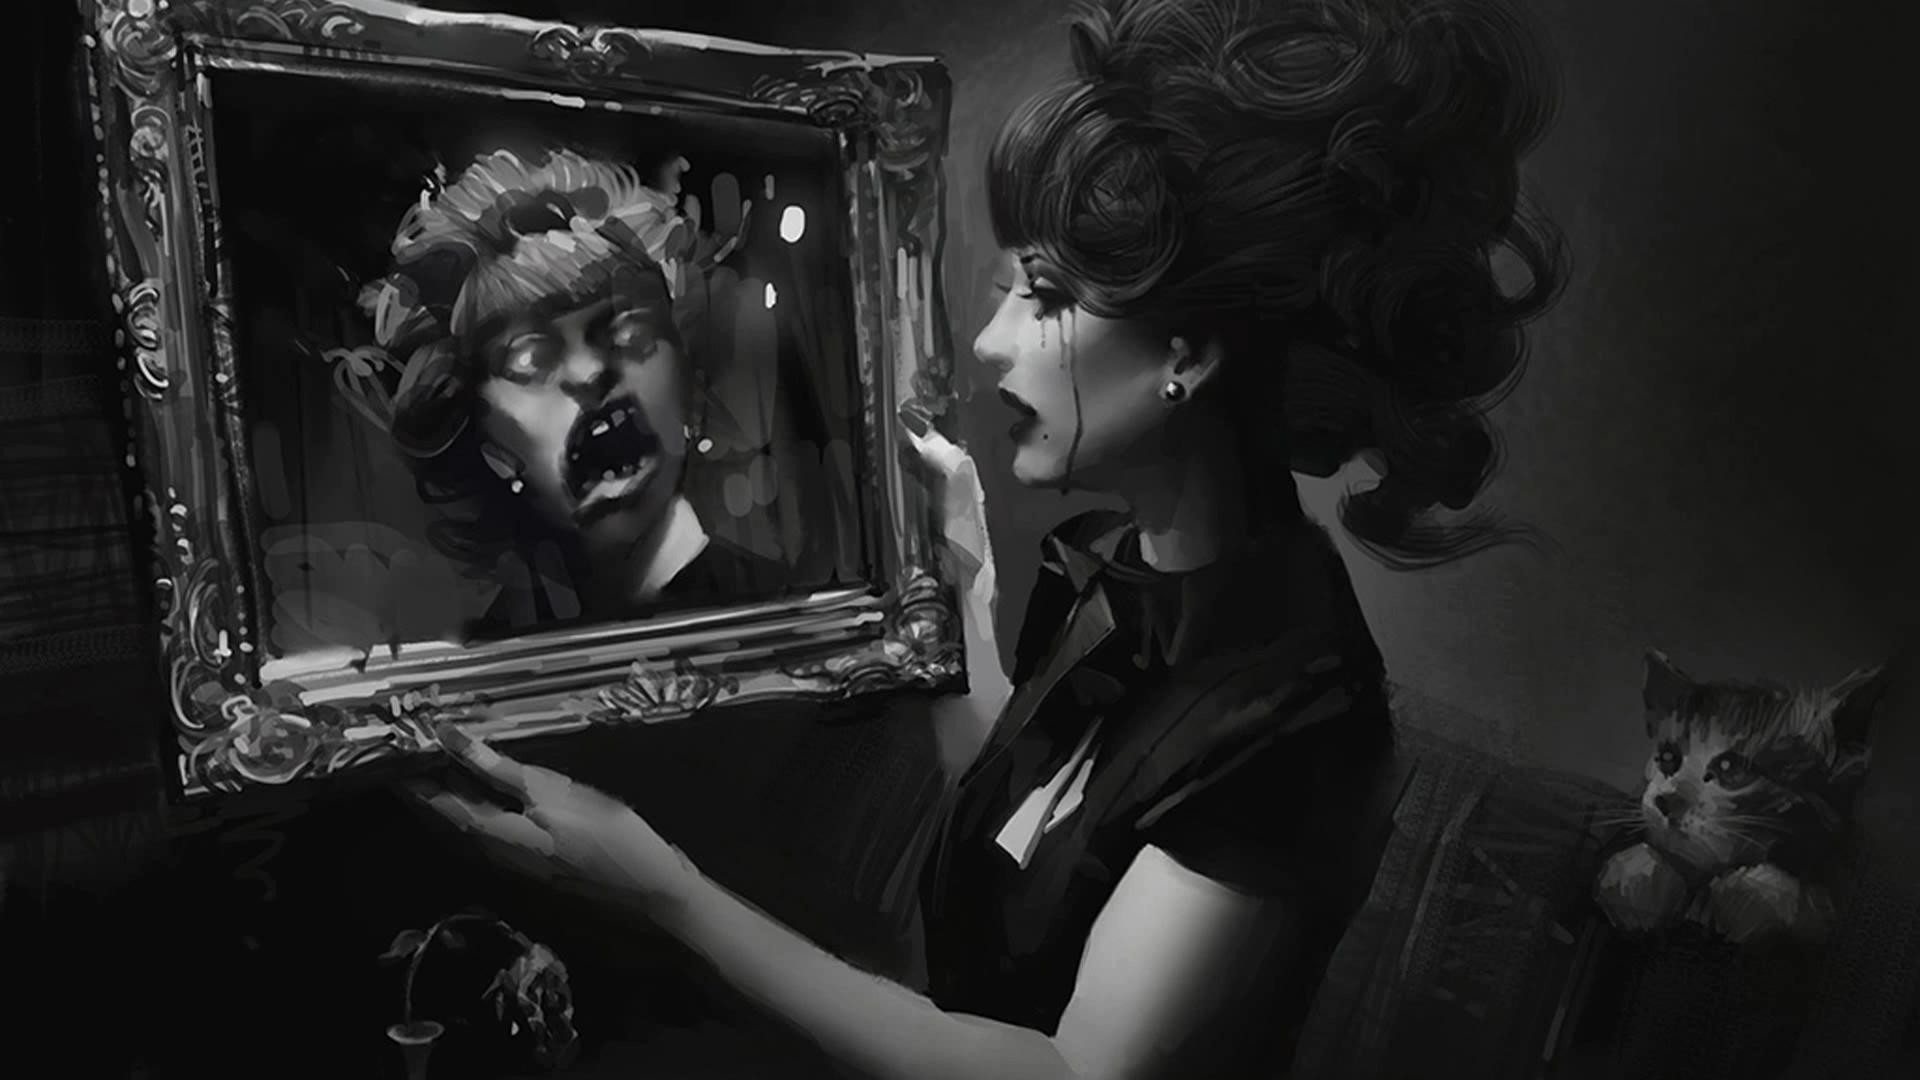 Над тюрьмою полночь вся чернее. («Отражение в зеркале», 1840. Девушка в отражении зеркала. Девушка с зеркальцем. Отражение в зеркале арт.